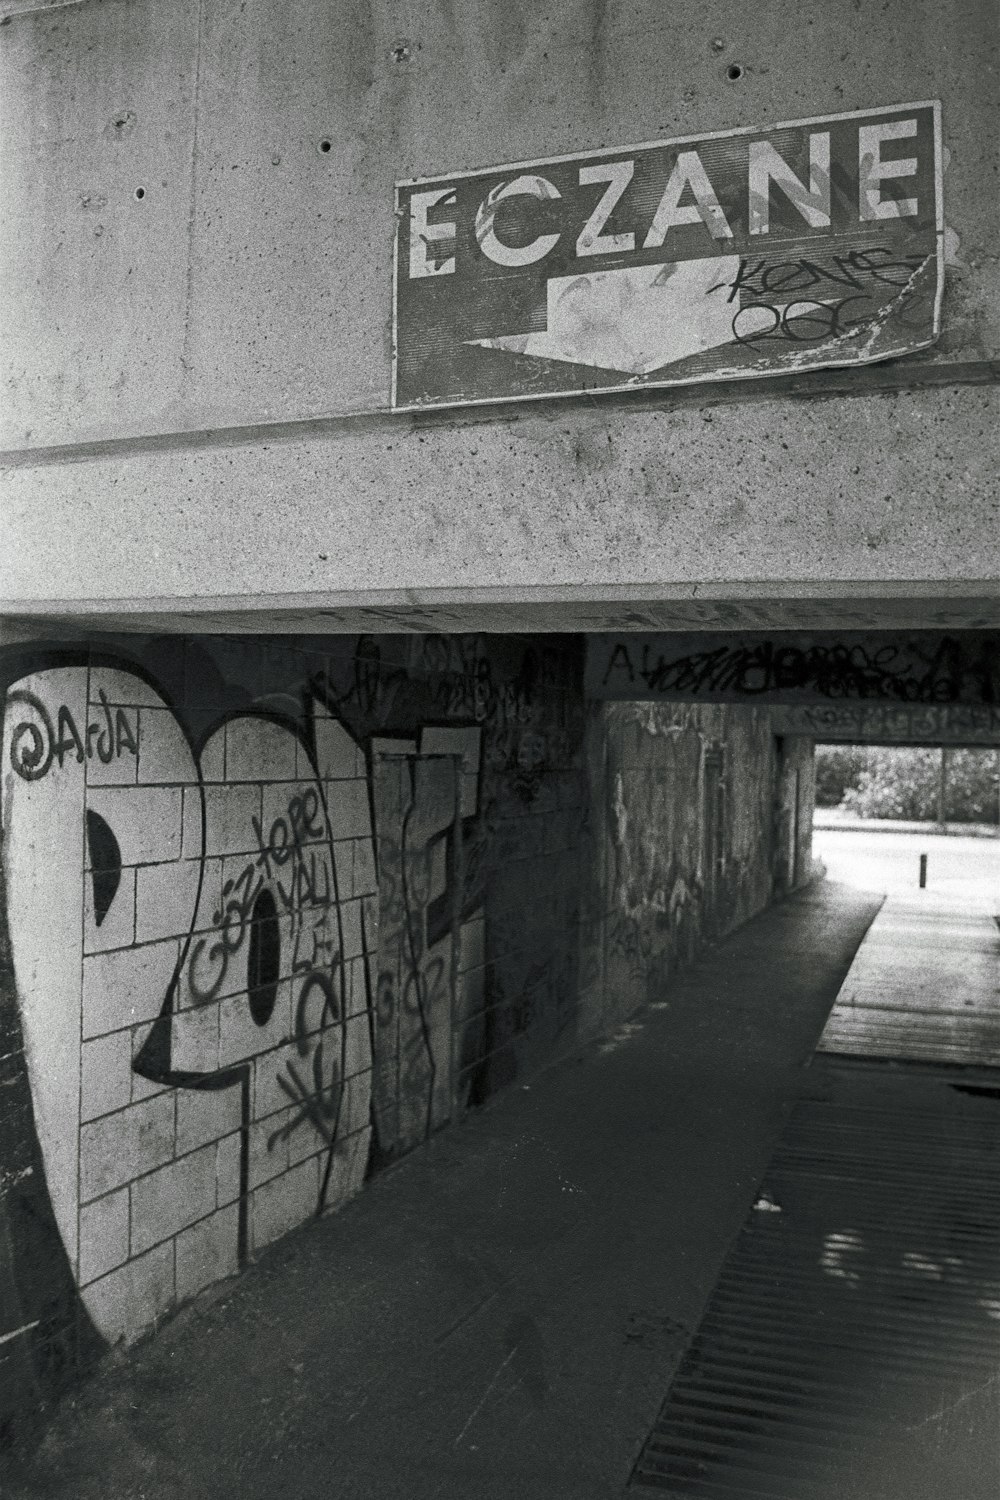 Una foto in bianco e nero di graffiti su un muro